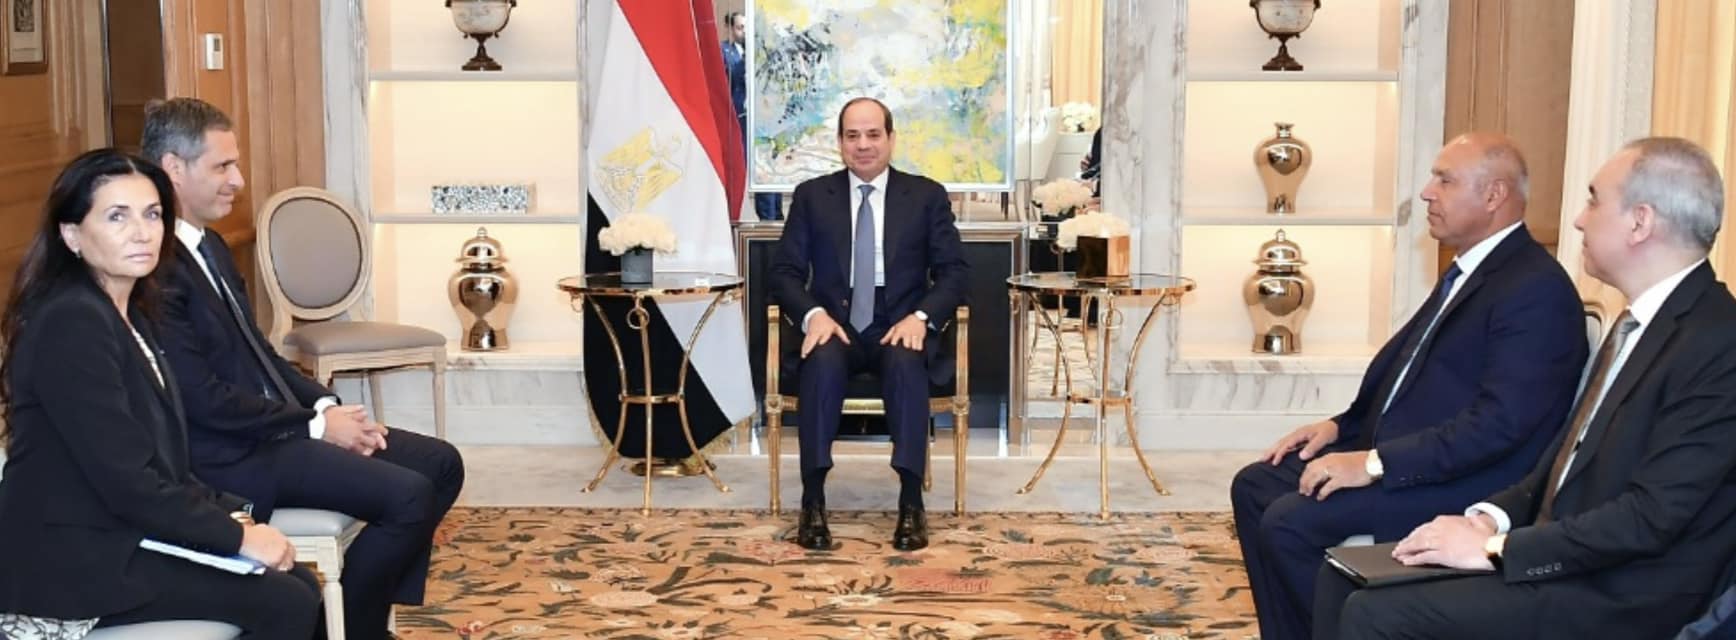 الرئيس السيسي يبحث سبل توسيع وتعميق أنشطة شركة الخطوط الملاحية الفرنسية العالمية في مصر